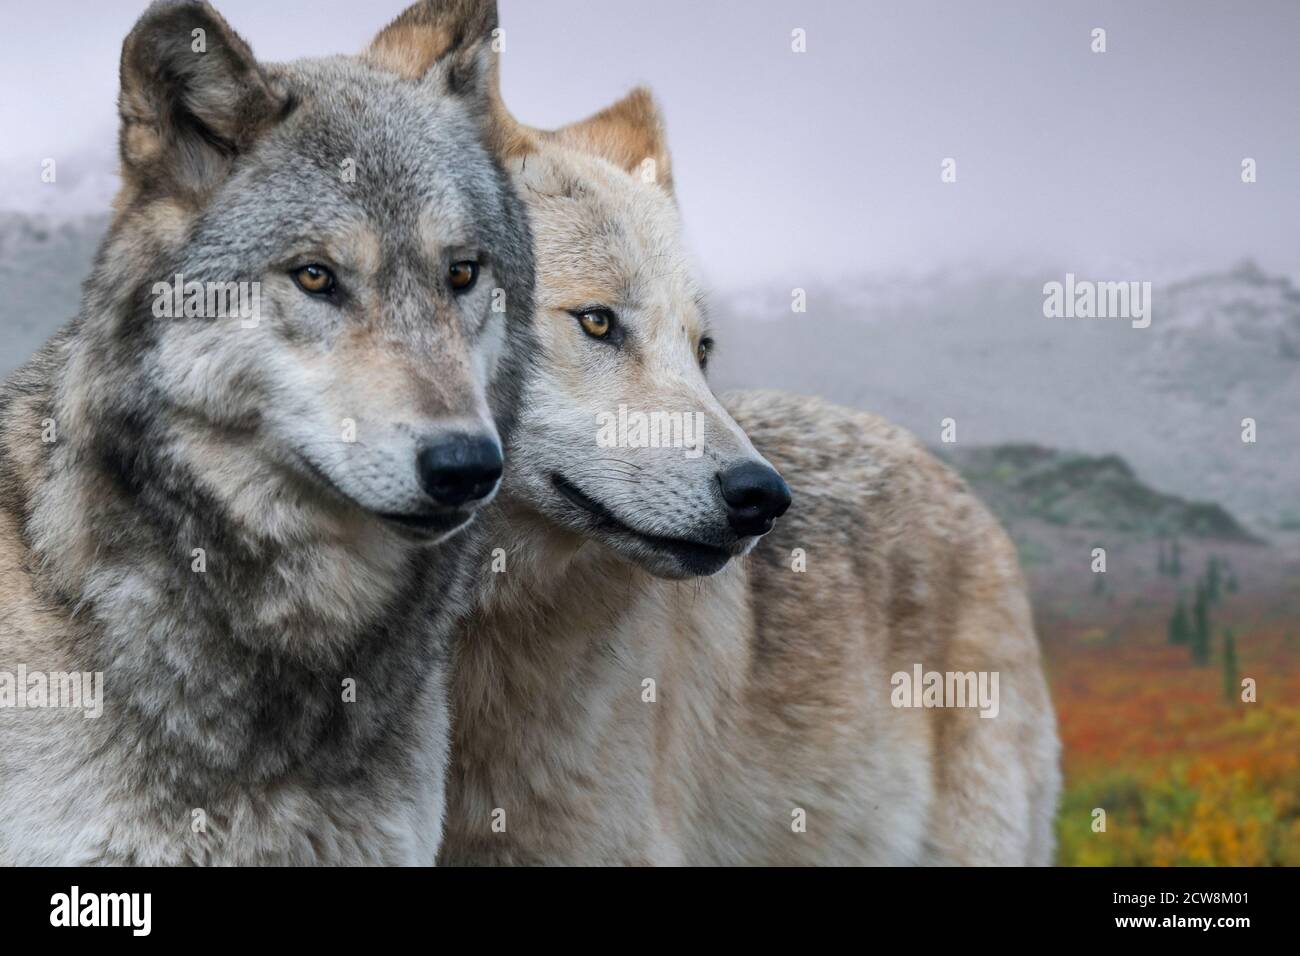 Dos lobos del noroeste / Mackenzie Valley wolves (Canis lupus occidentalis) subespecie de lobo gris nativo de Norteamérica, Canadá y Alaska Foto de stock